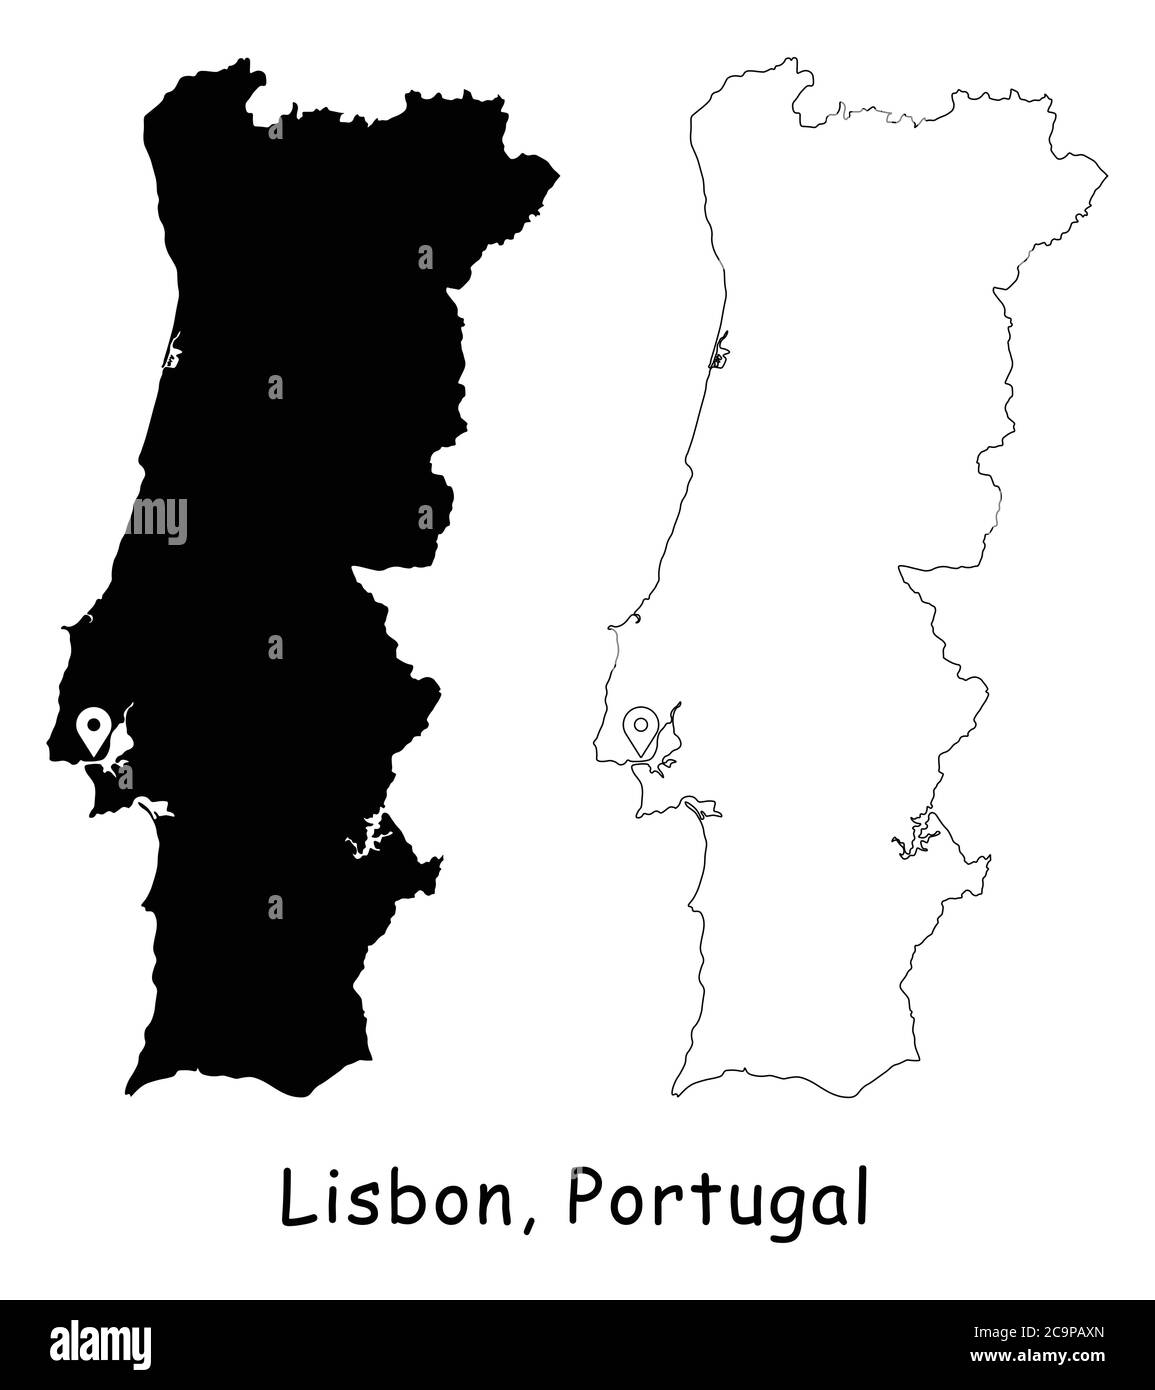 Lisbona, Portogallo. Mappa dettagliata del Paese con il pin della posizione sulla città capitale. Silhouette nera e mappe di contorno isolate su sfondo bianco. Vettore EPS Illustrazione Vettoriale